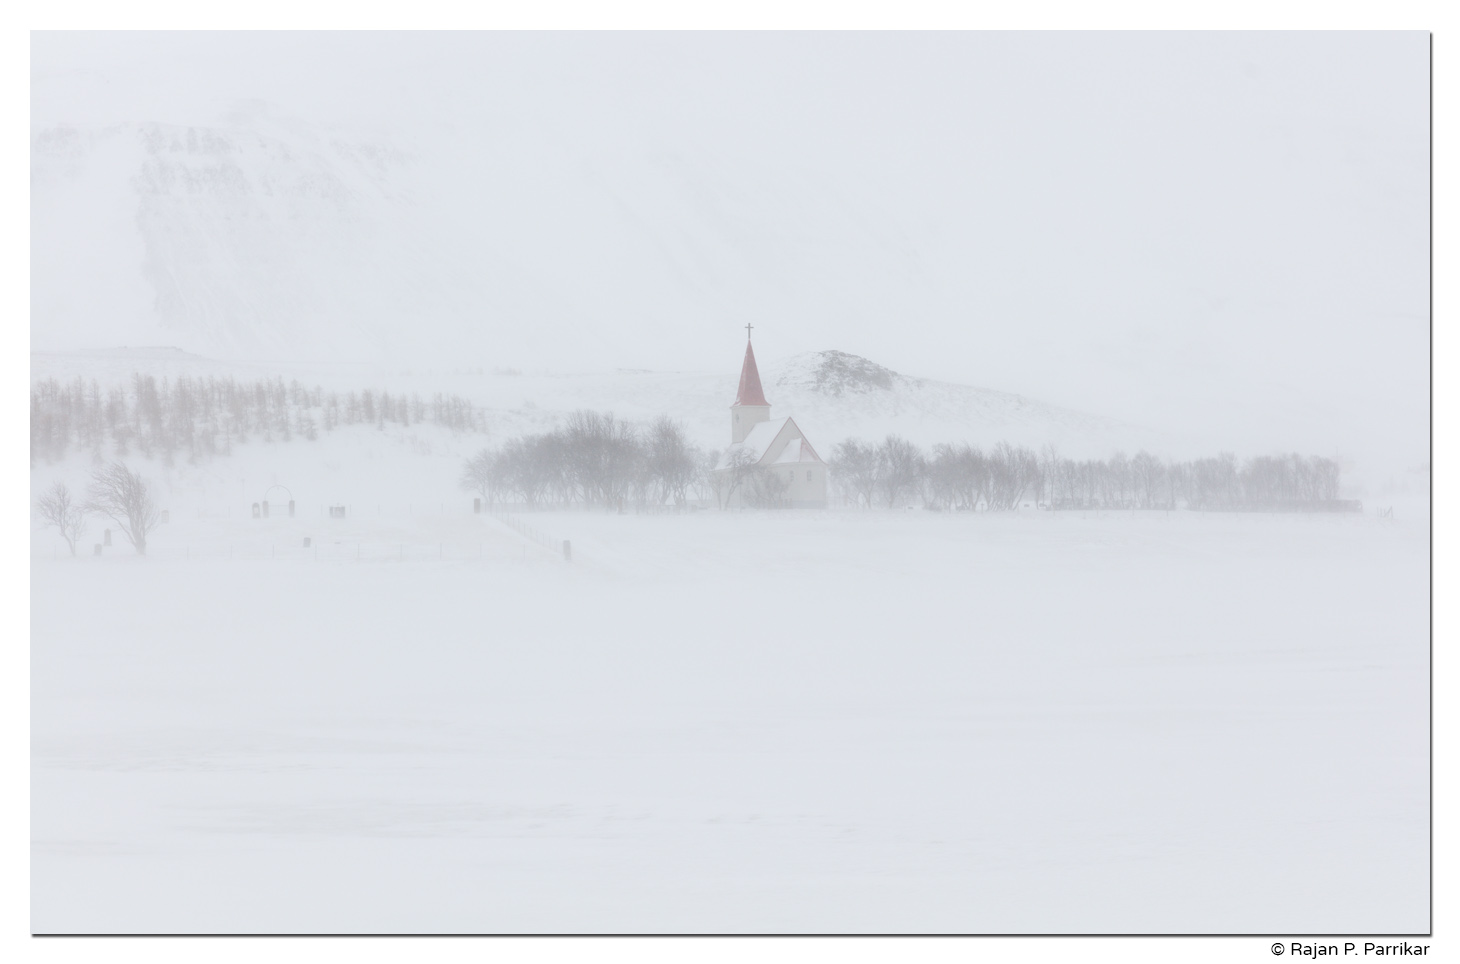 Stærri-Árskógur church in a snow storm, Eyjafjörður, Iceland